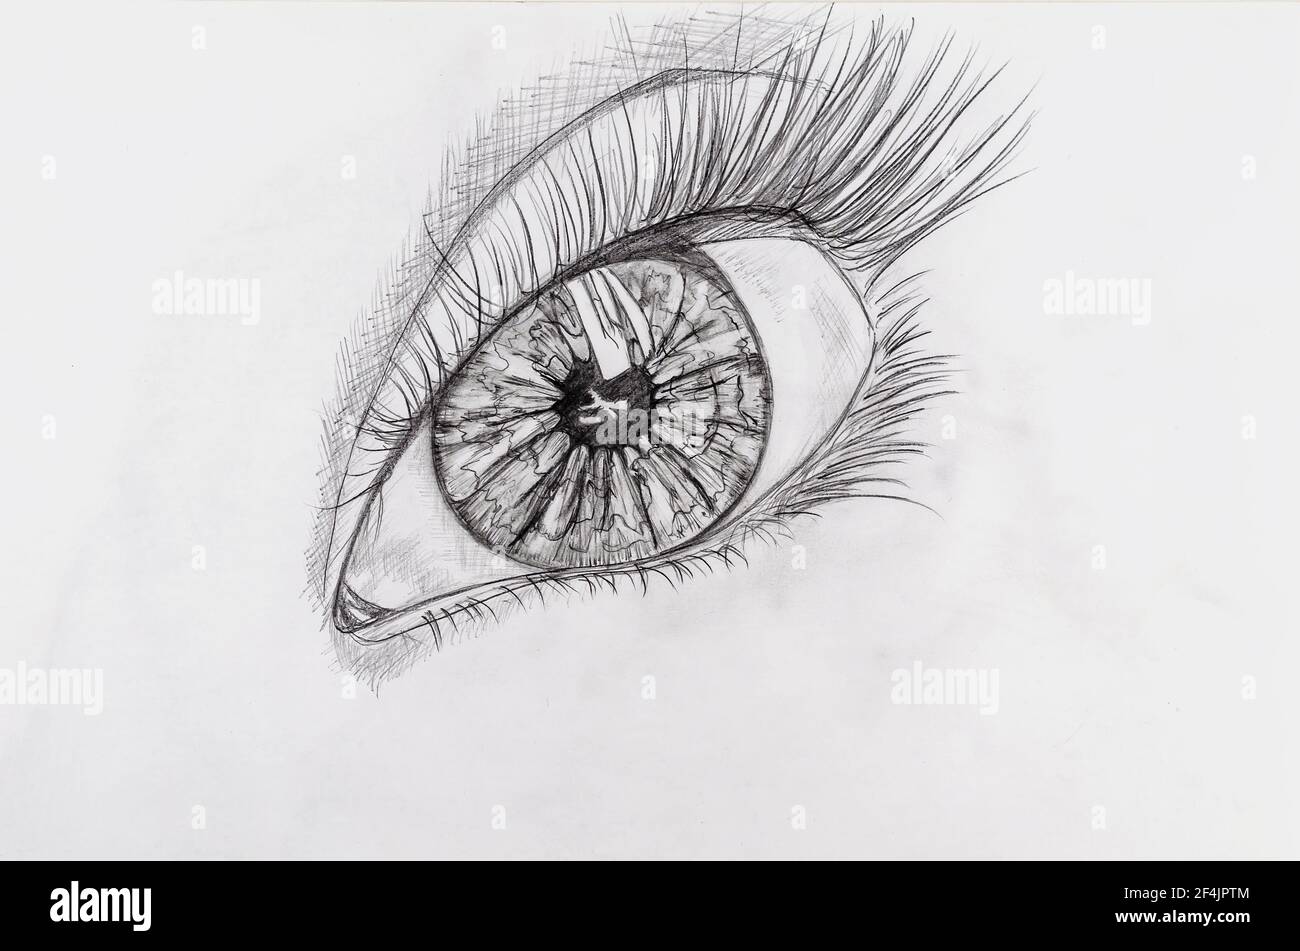 Disegno a matita di un occhio femminile su carta bianca. Immagine  dettagliata dell'organo di visione. Schizzo monocromatico disegnato a mano.  Art Foto stock - Alamy